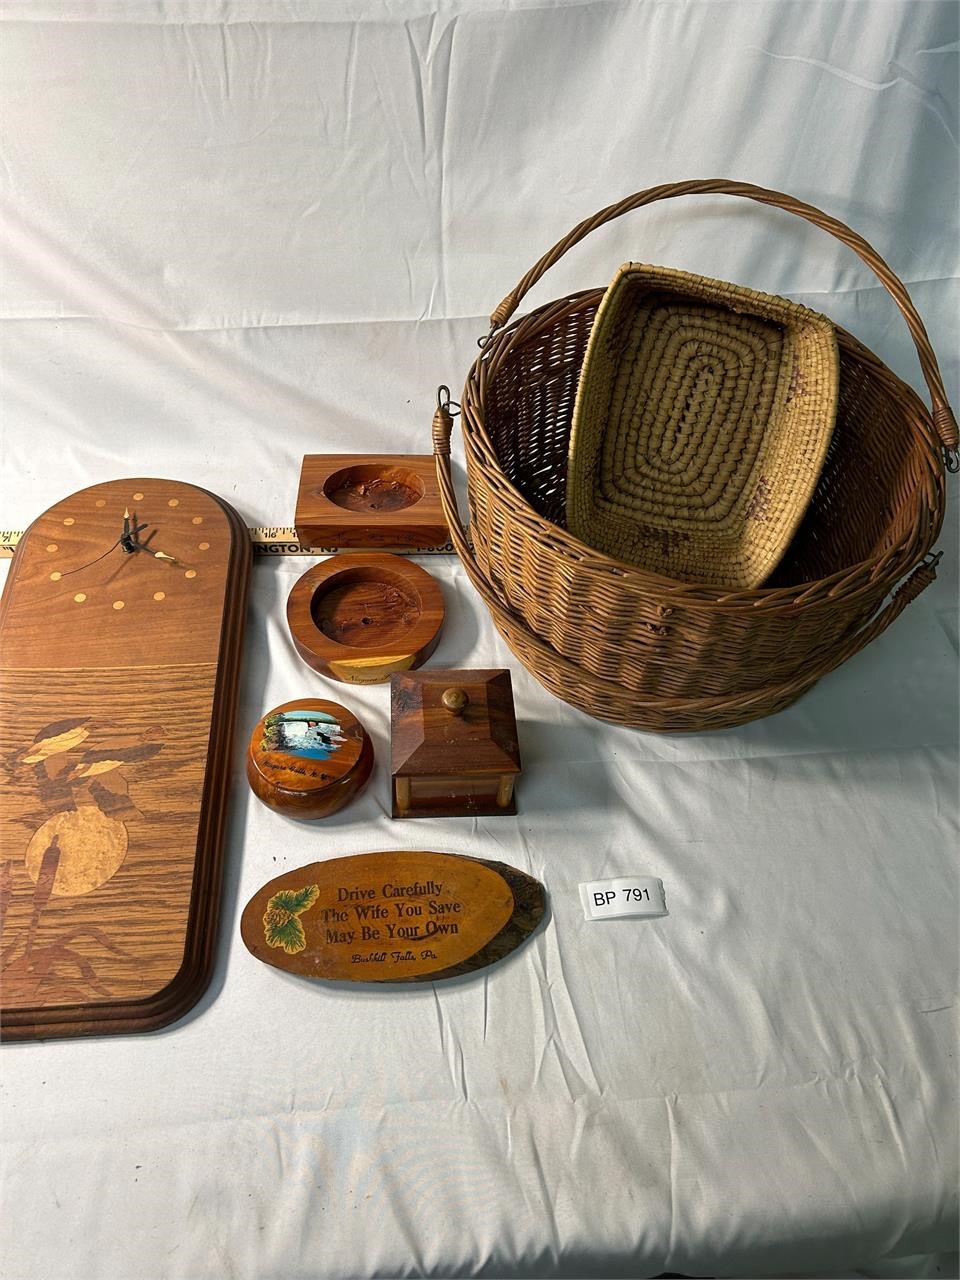 Lot of VTG Mid Century Wooden Items Clock Baskets